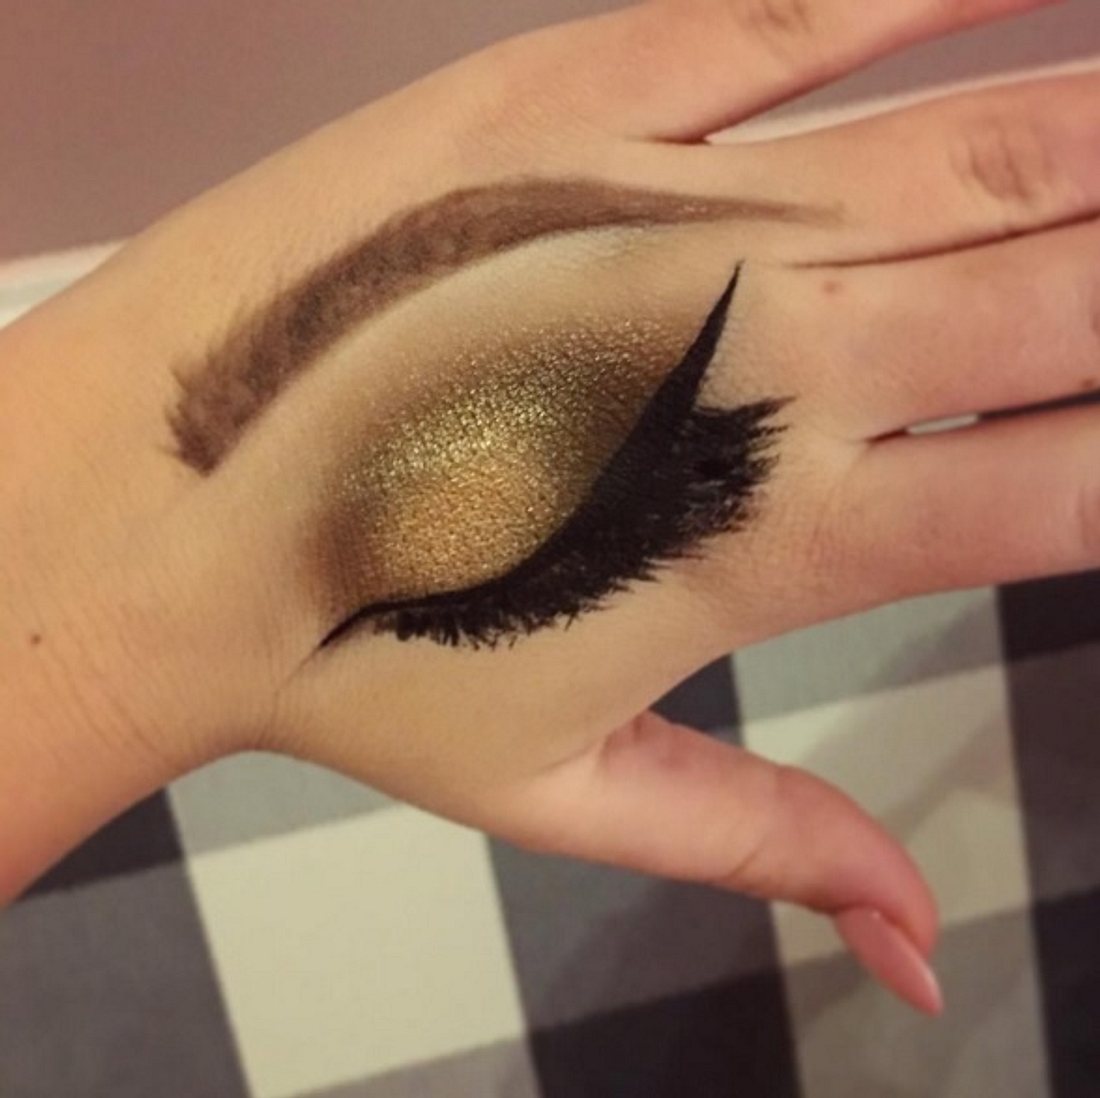 Dieser neue Instagram Trend wird momentan von vielen Make-Up-Artists aufgegriffen